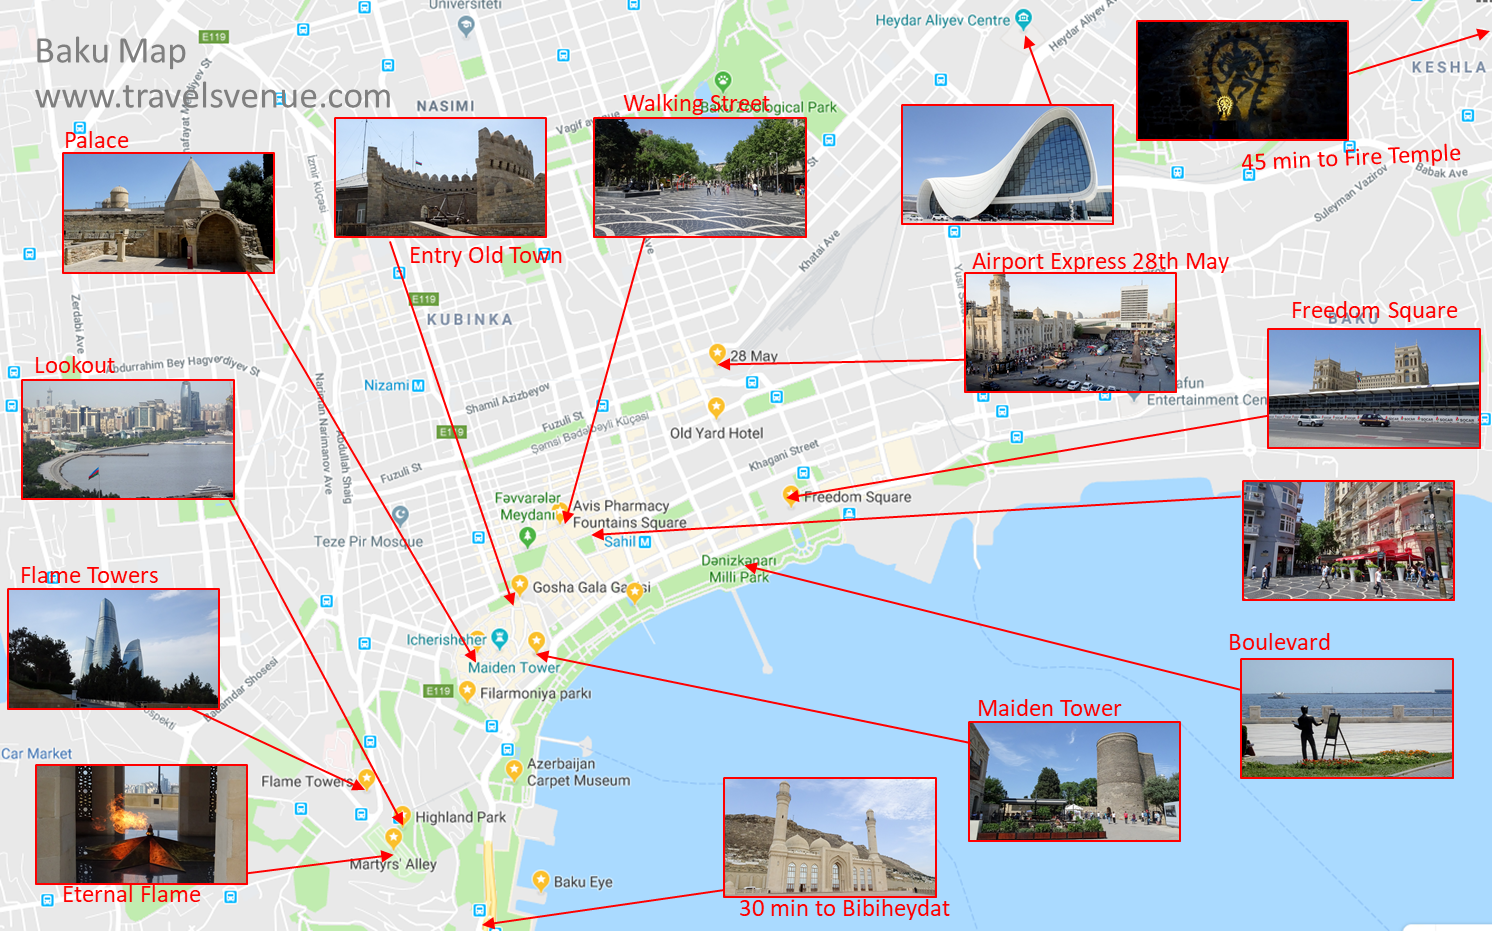 baku city tour map